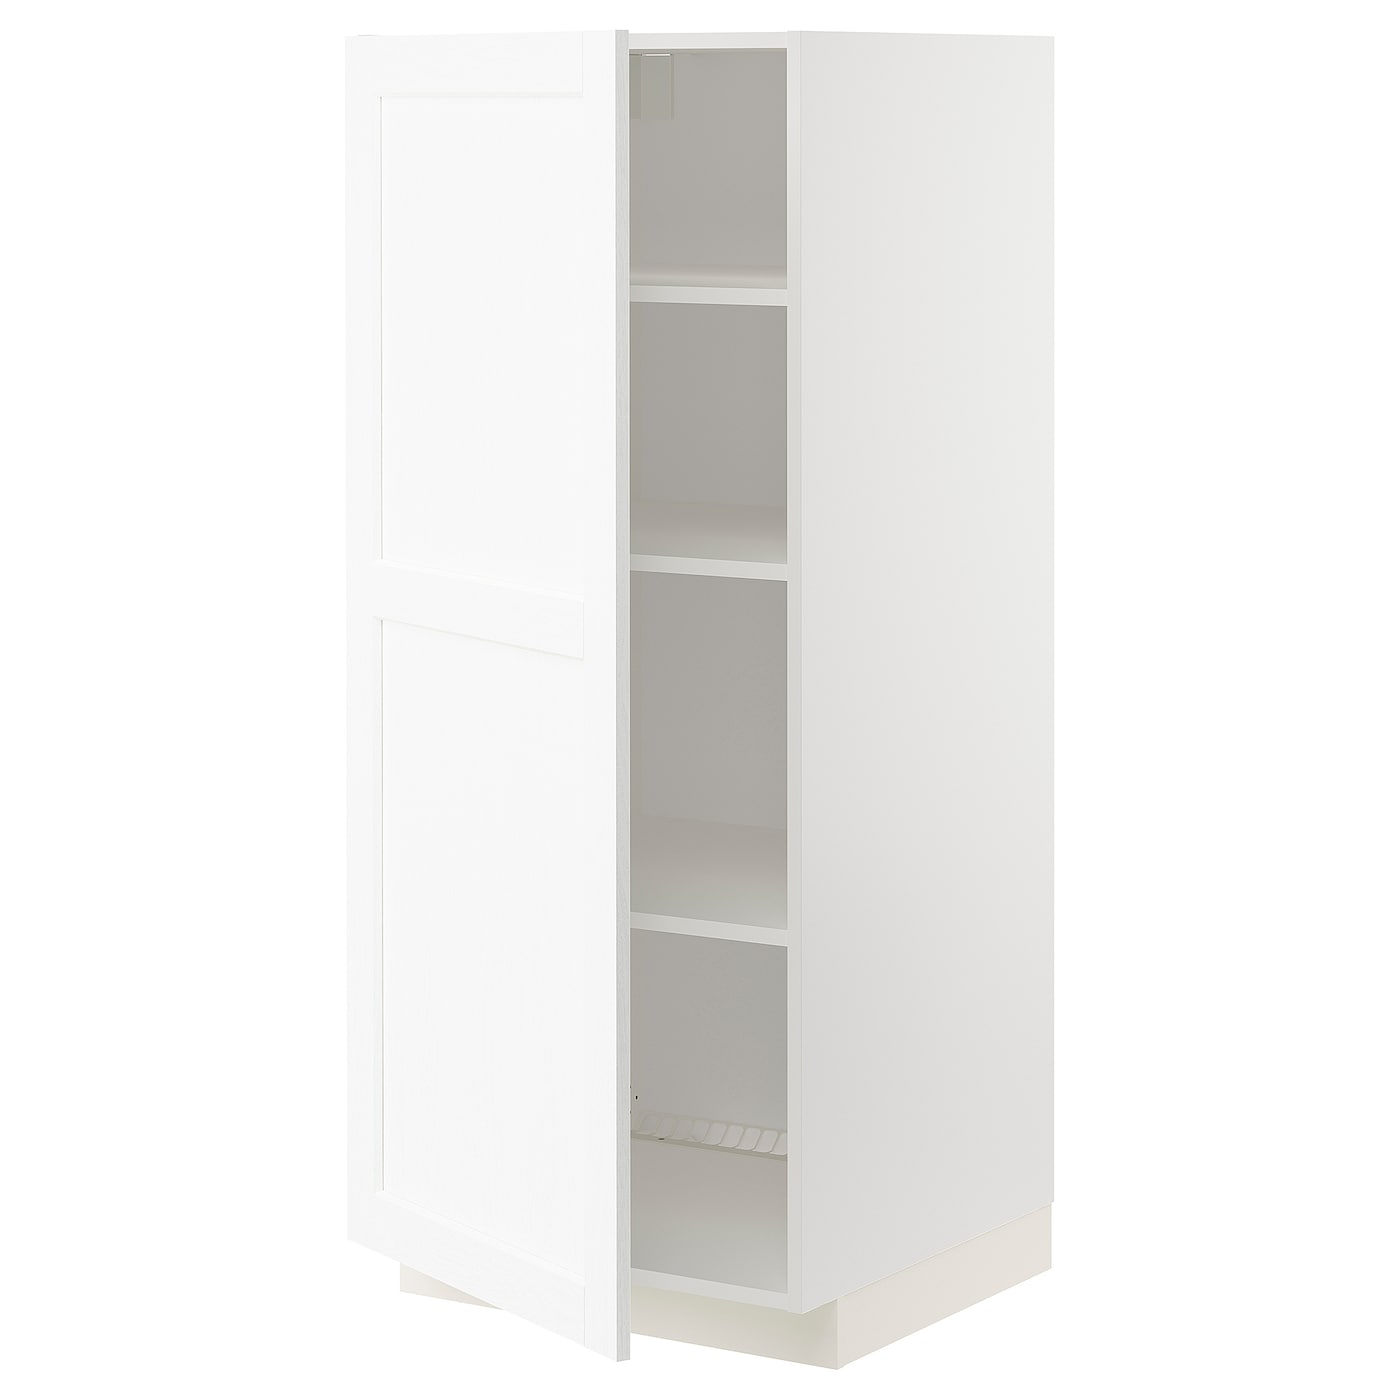 Напольный кухонный шкаф с полками - IKEA METOD/МЕТОД ИКЕА, 140х60х60 см, белый